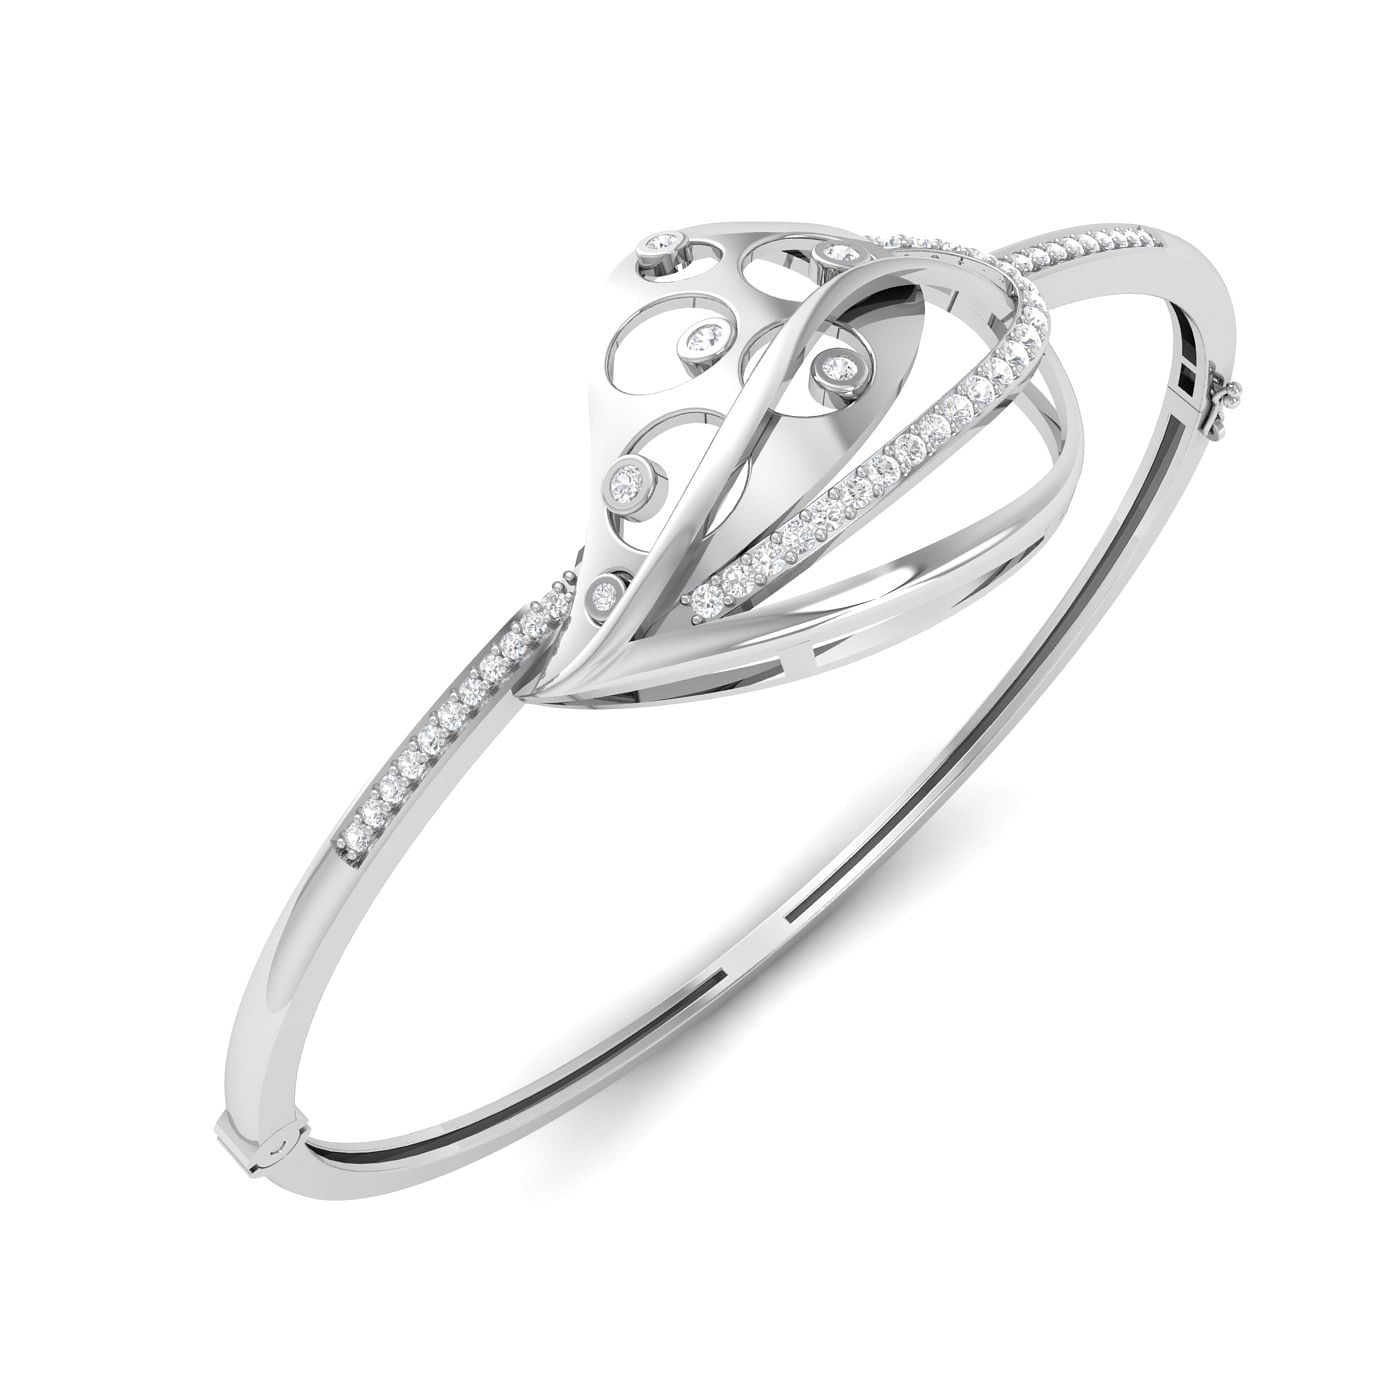 Charo Diamond Bracelet With White Gold